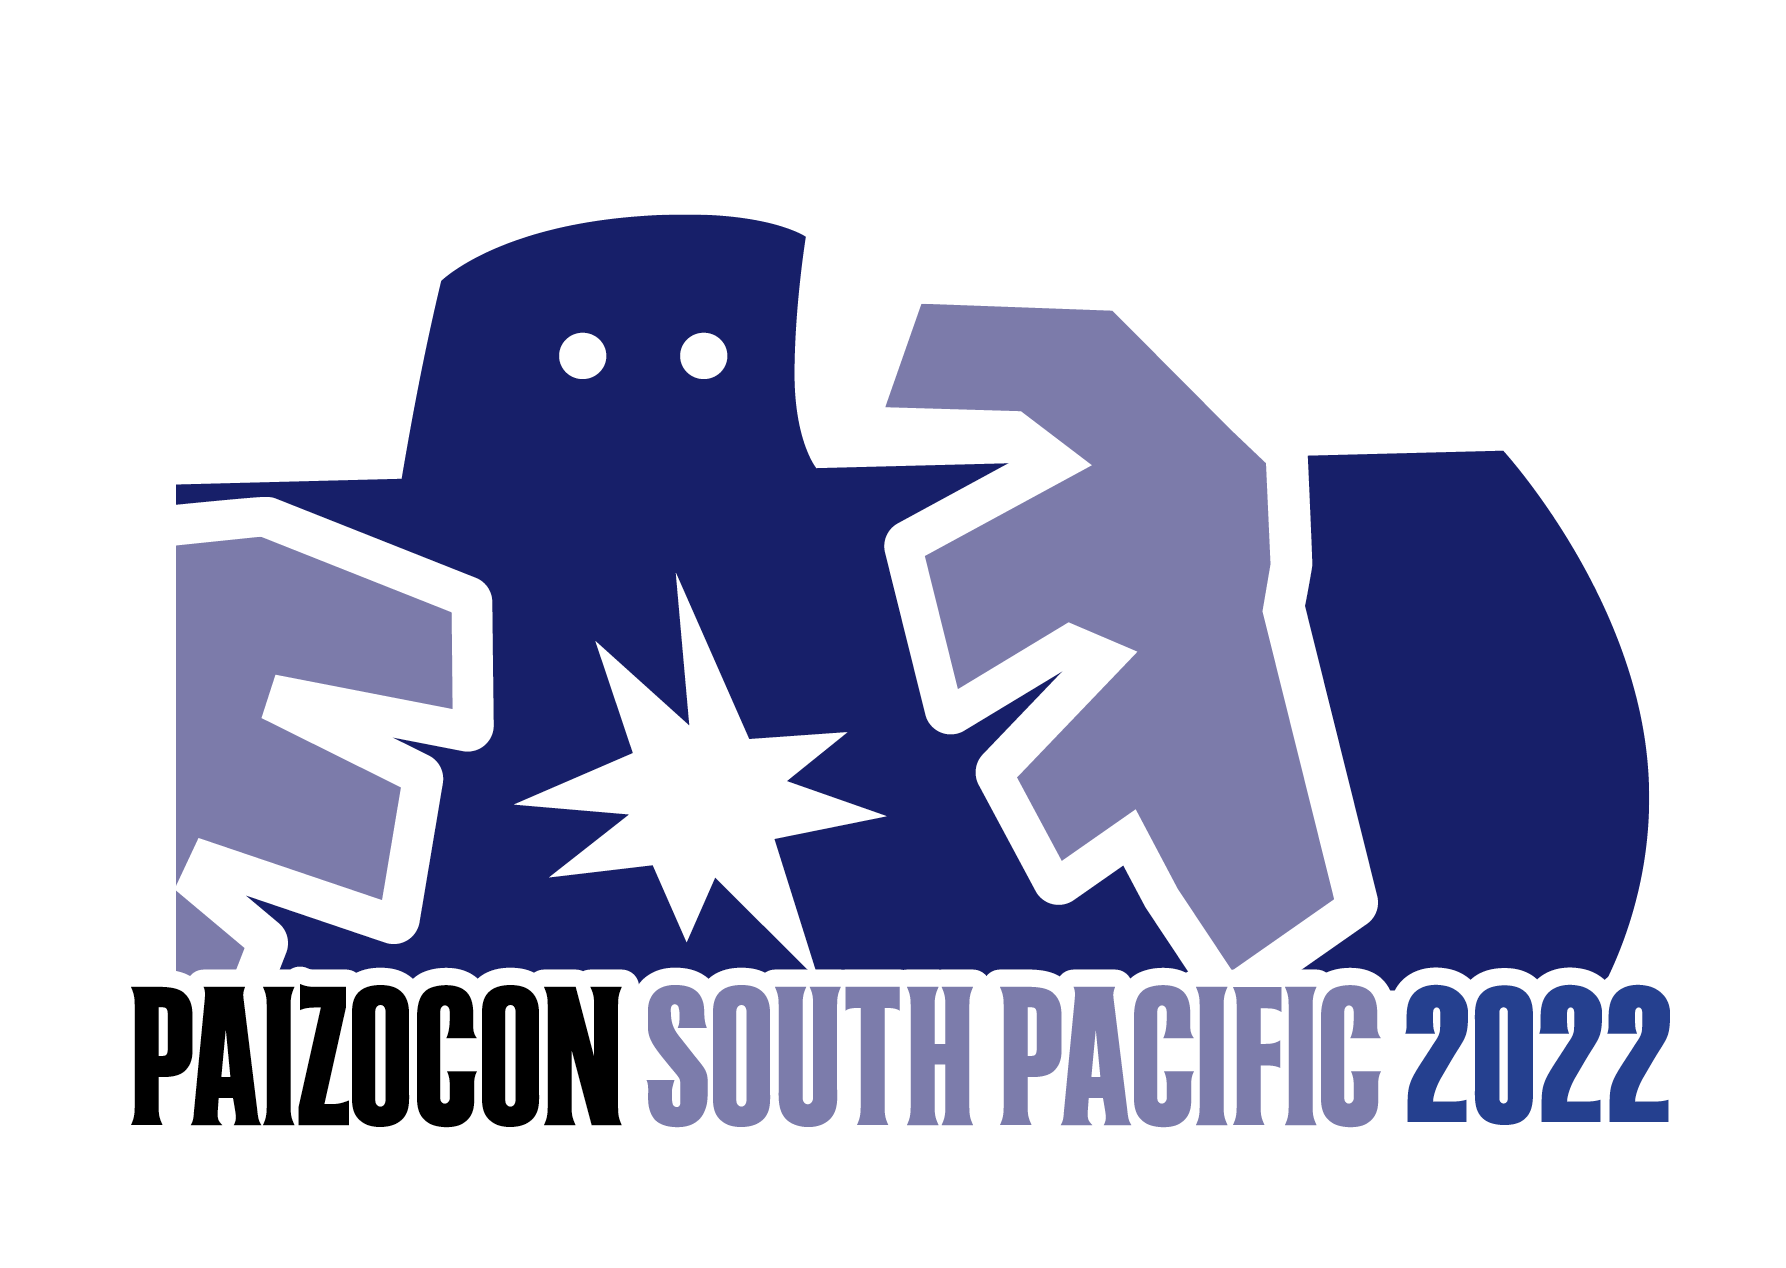 PaizoCon South Pacific logo